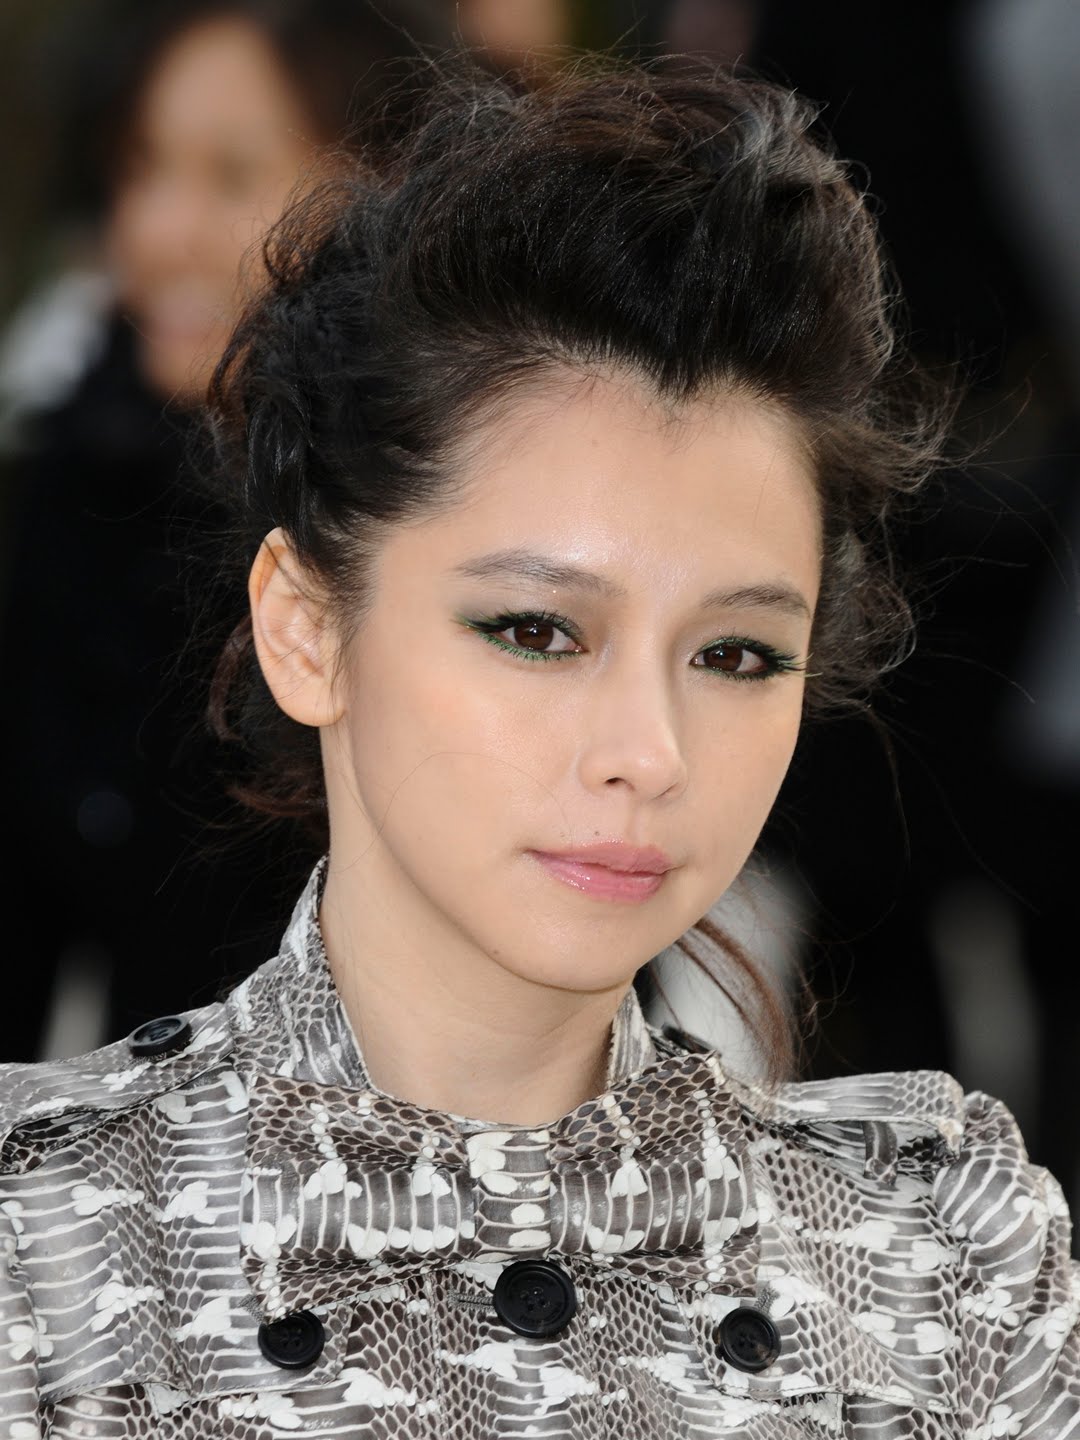 Vivian Hsu Taiwanese Singer, Actress